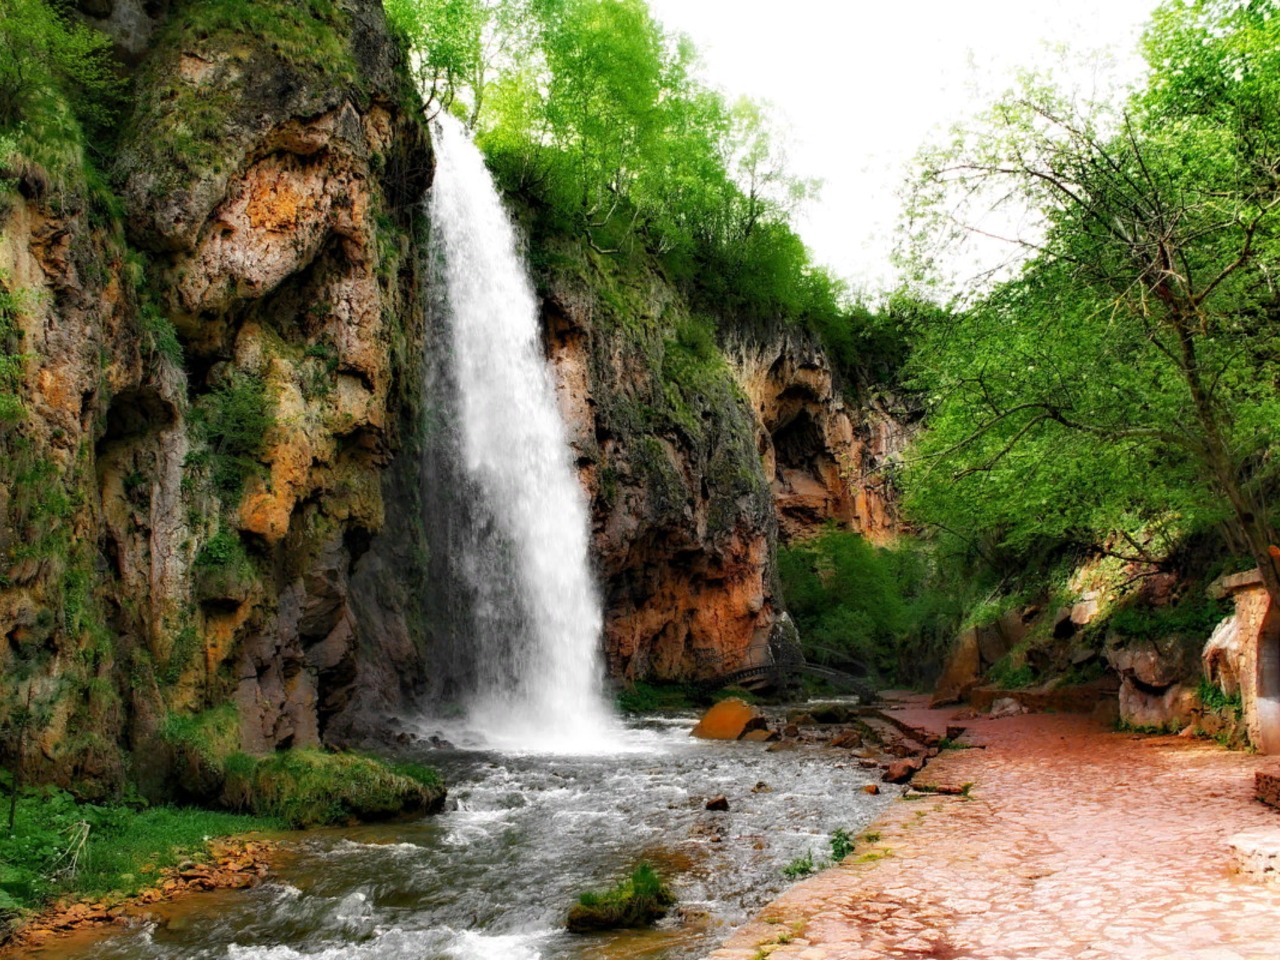 Поездка к Медовым водопадам в Карачаево-Черкесии | Цена 9350₽, отзывы, описание экскурсии